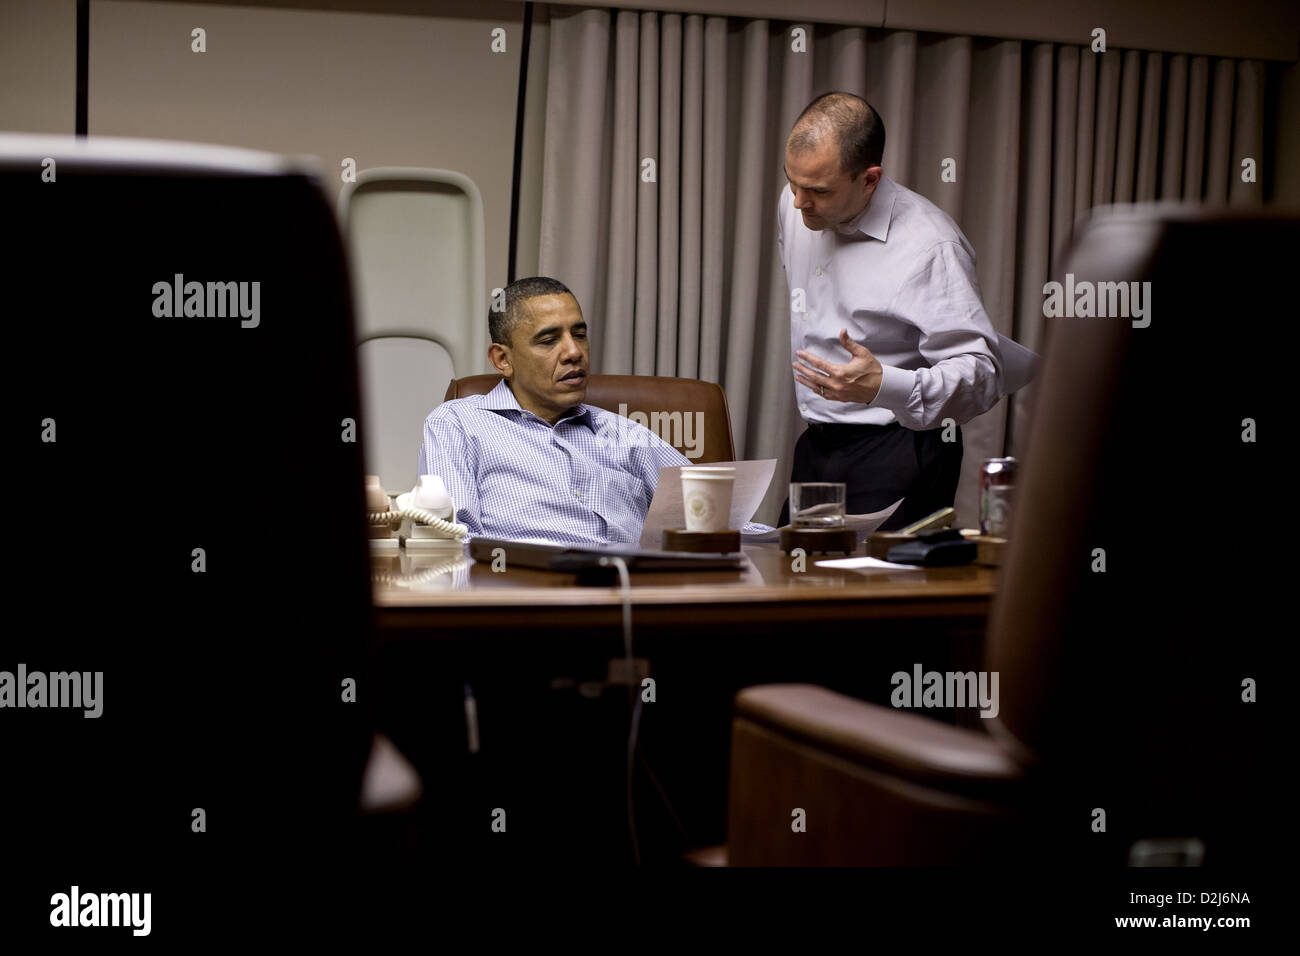 US-Präsident Barack Obama arbeitet in seiner Ansprache an die Nation mit Ben Rhodes, stellvertretender nationaler Sicherheitsberater für strategische Kommunikation an Bord der Air Force One vor Landung 1, Mai 2012 in Afghanistan. Stockfoto